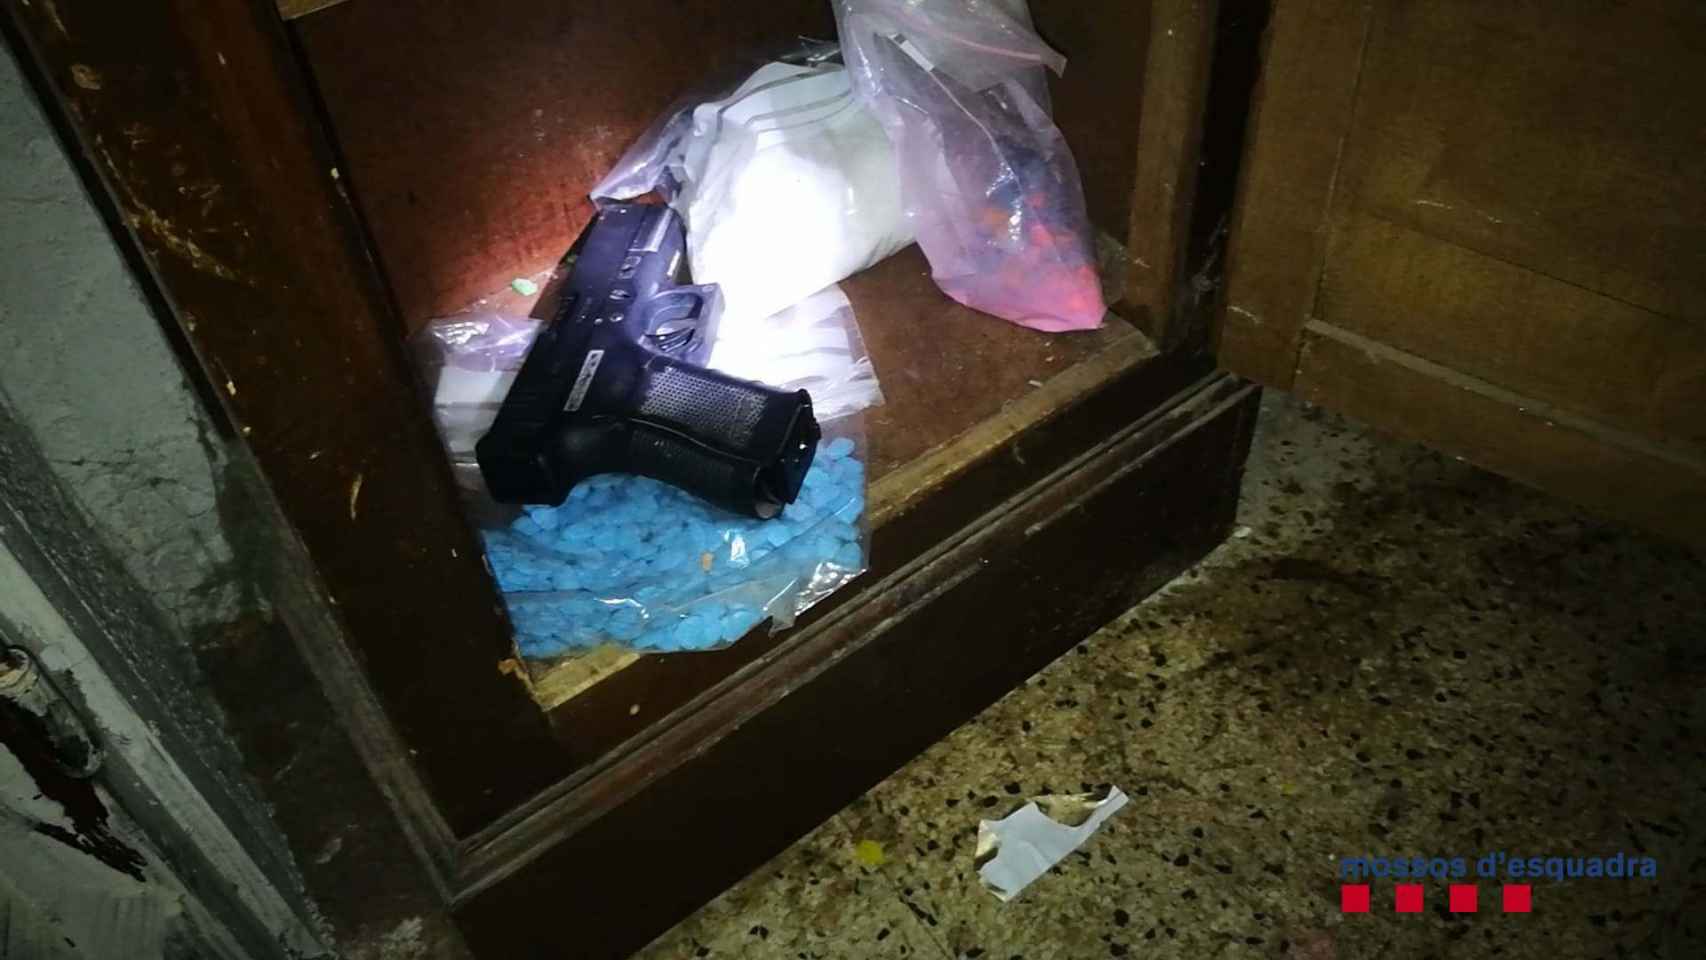 Drogas y un arma, material incautado en una narconave de Badalona / MOSSOS D'ESQUADRA